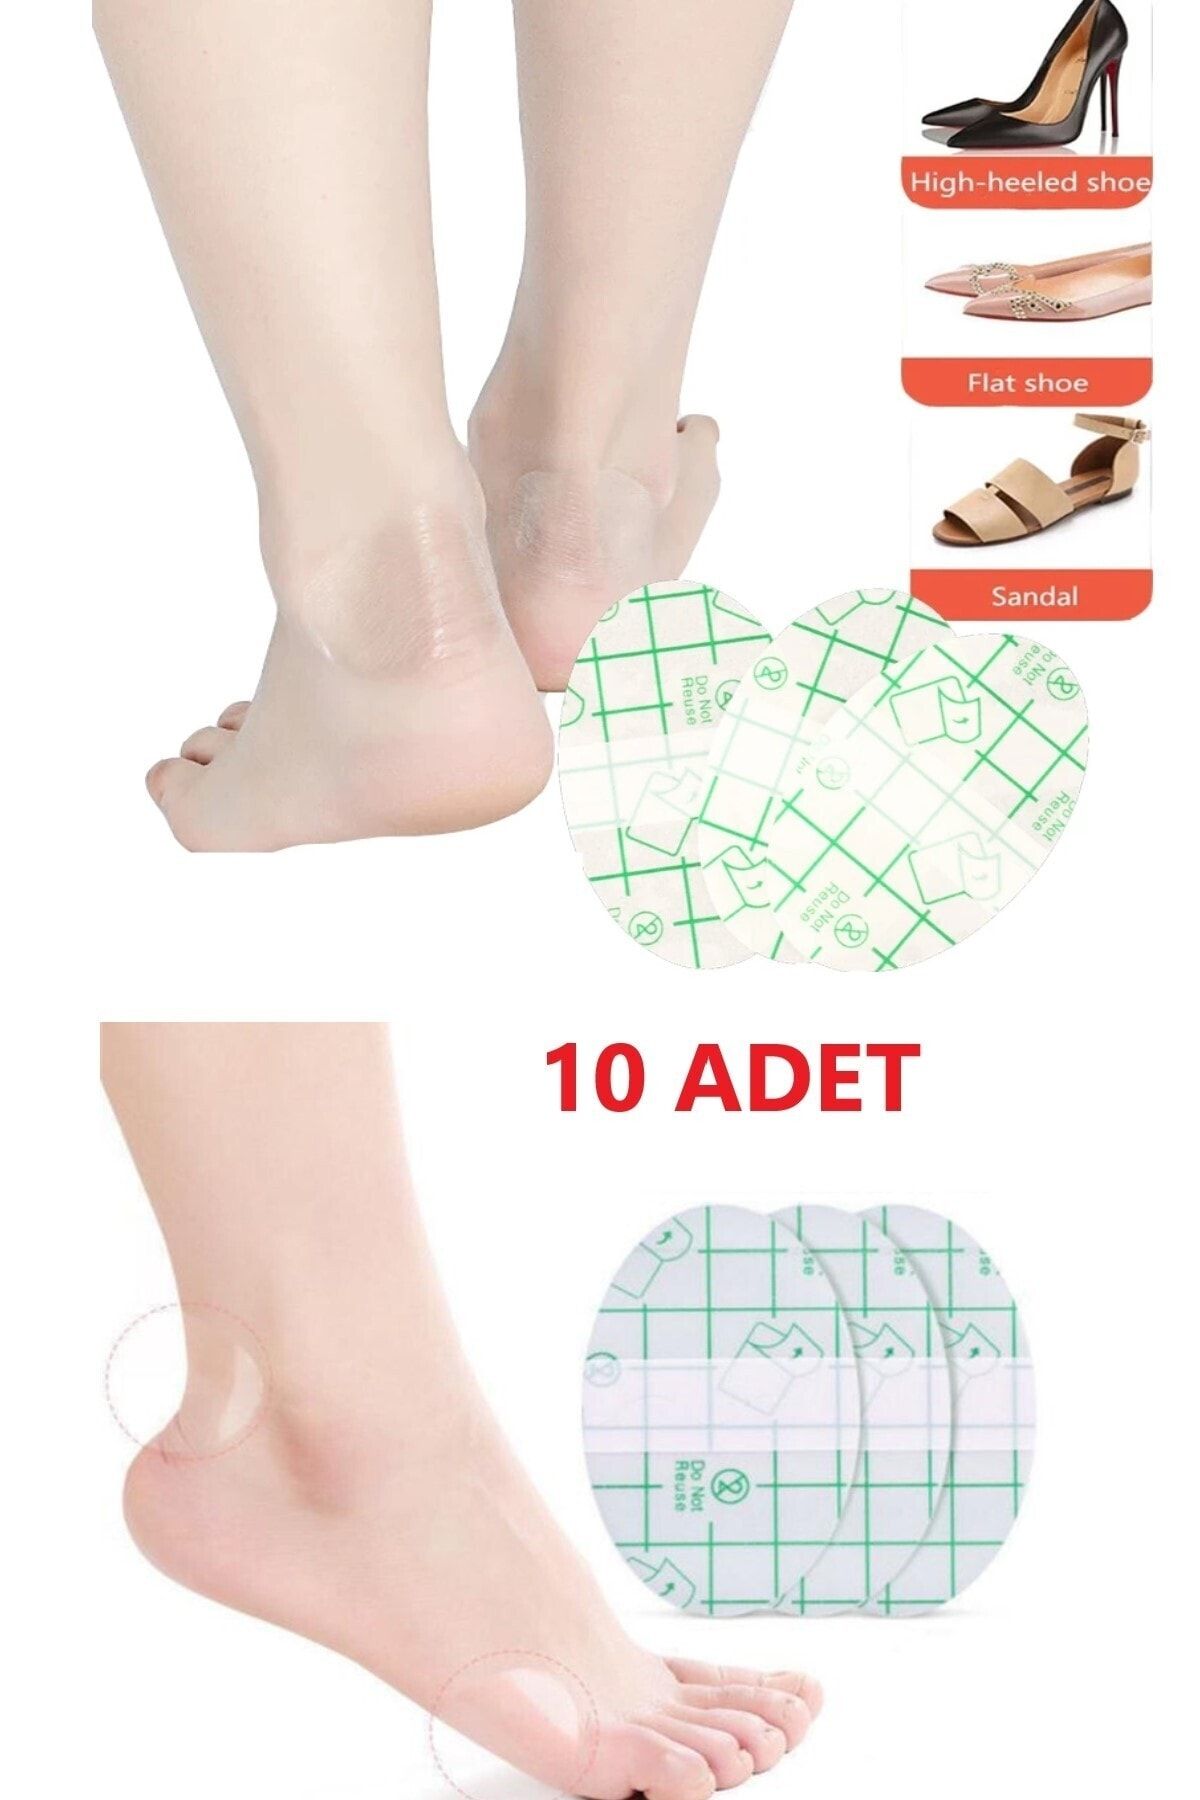 optana 10 Adet Ayakkabı Arka Topuk Vurma Önleyici Yara Yapmaz Çıkartma Bant Yapışkanlı Topuk Koruyucu Bant